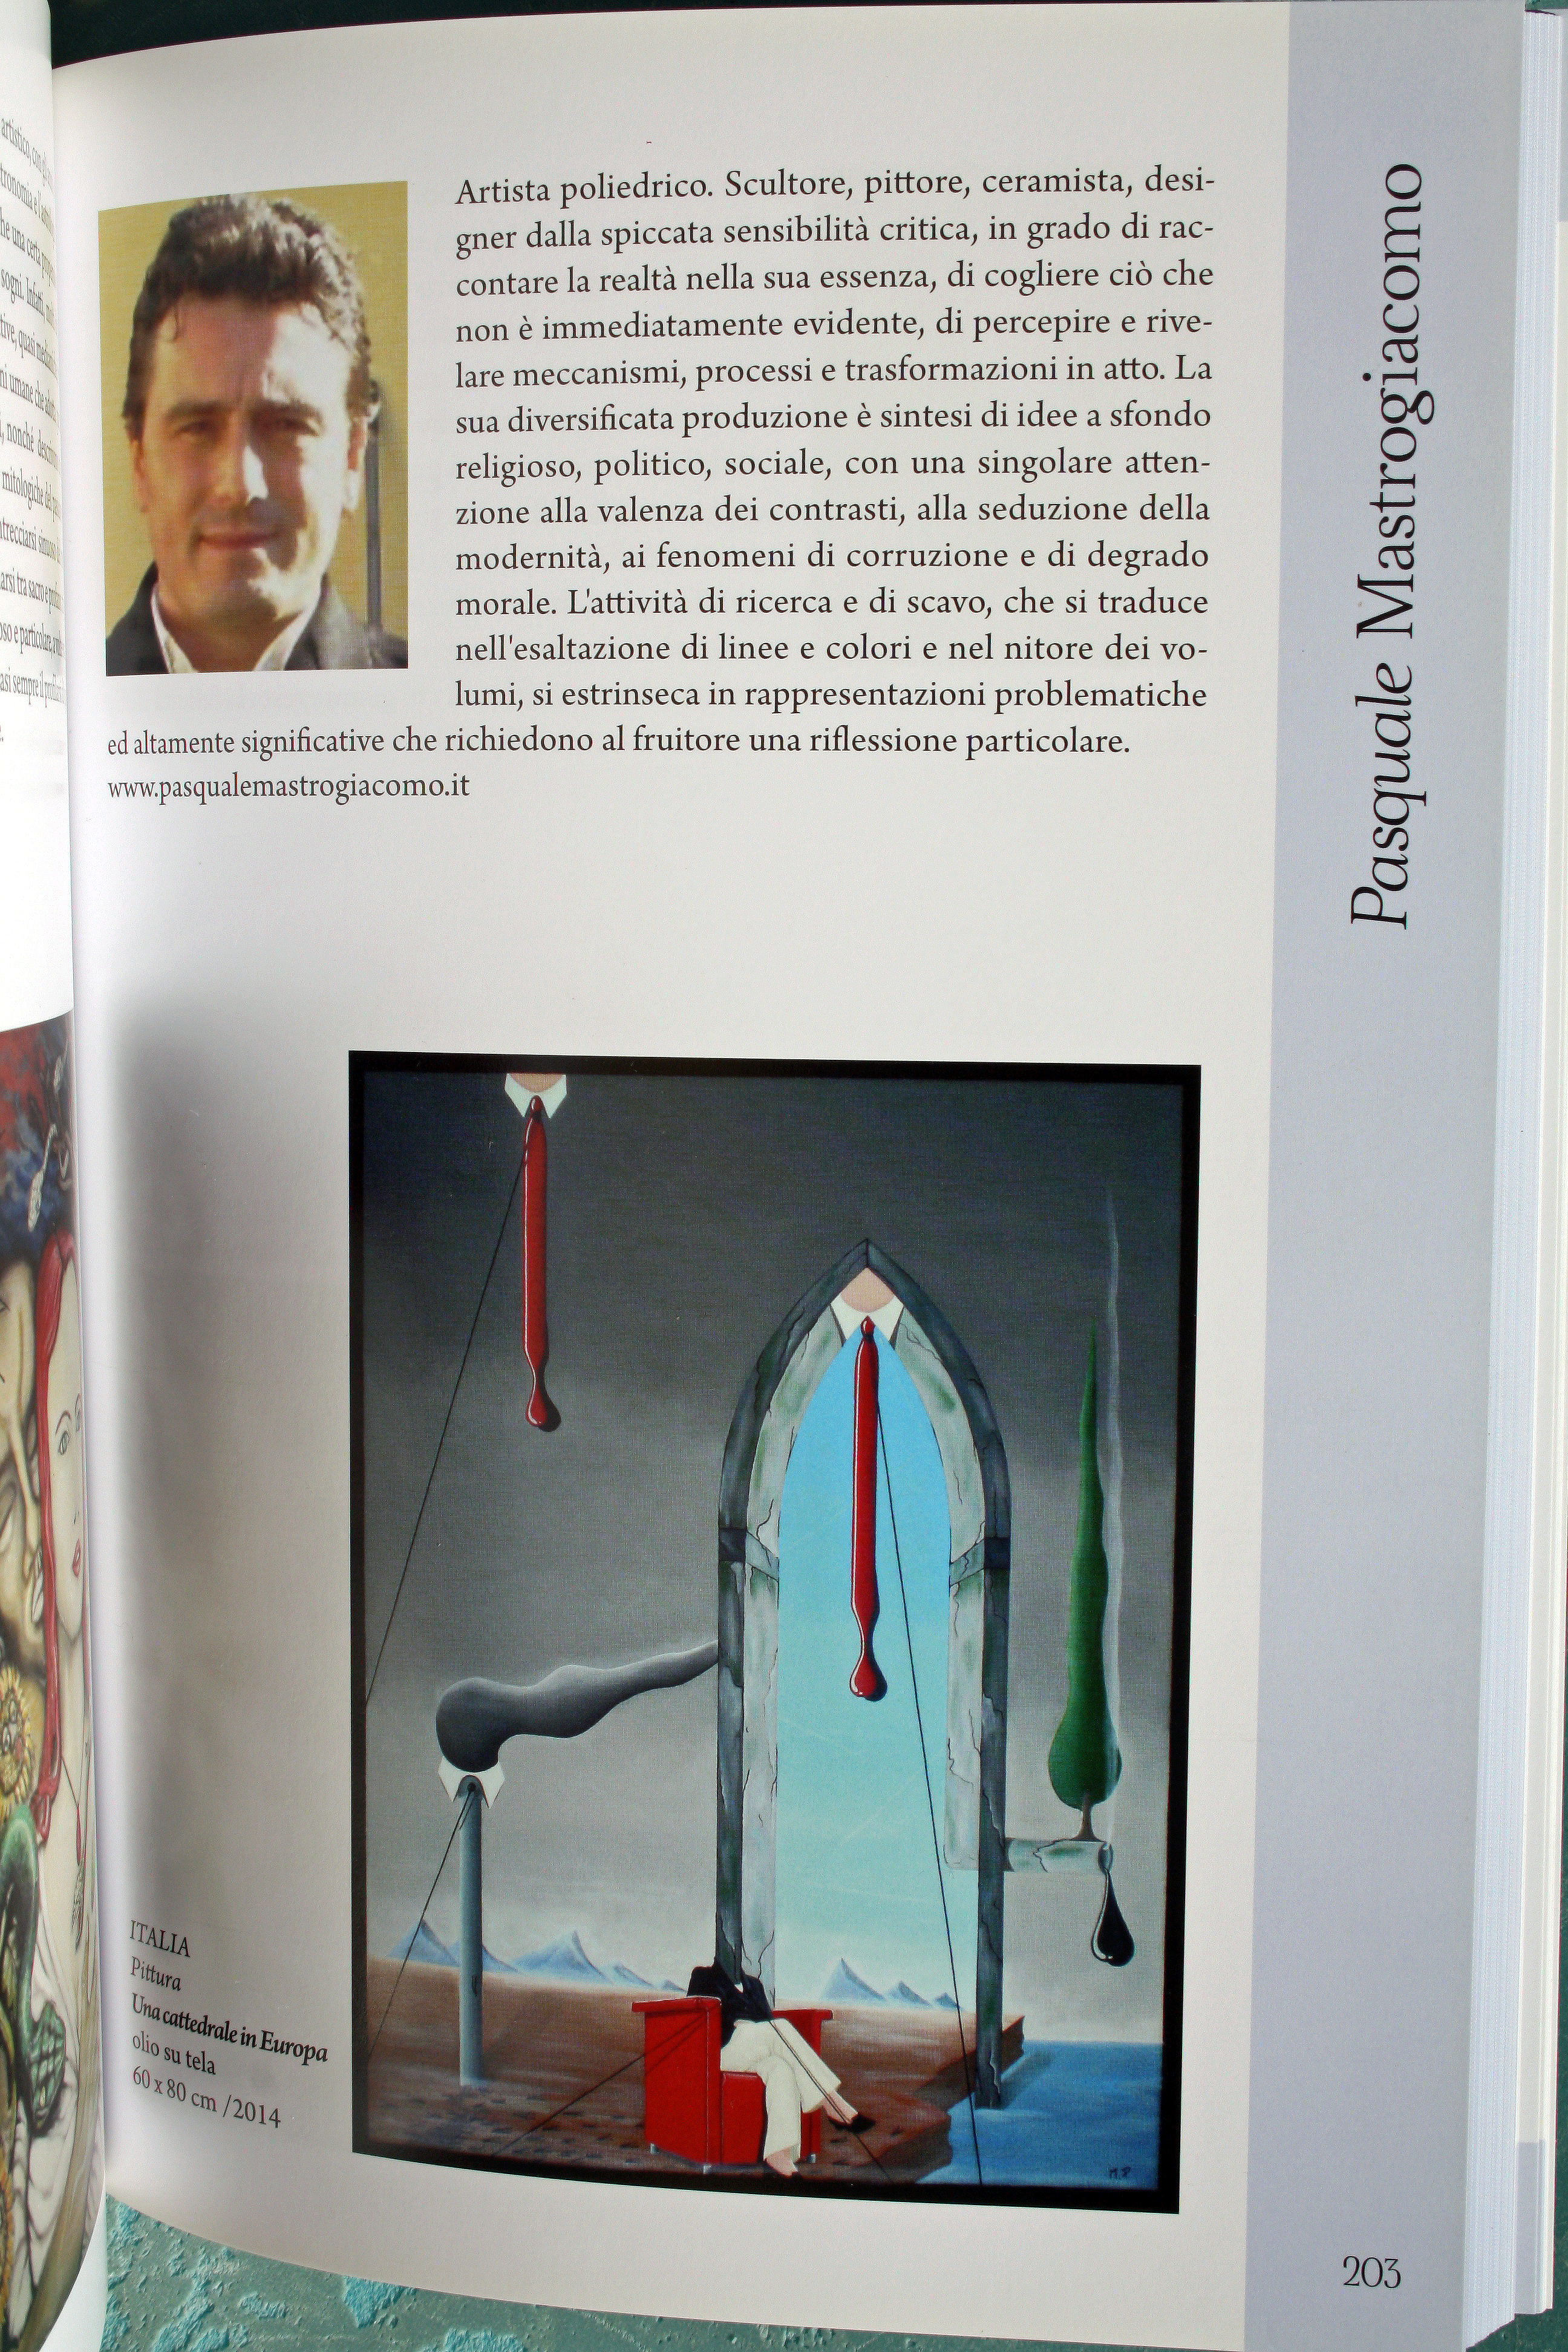 Biennale D'Arte Contemporanea di Salerno 2014/2015. Pasquale Mastrogiacomo